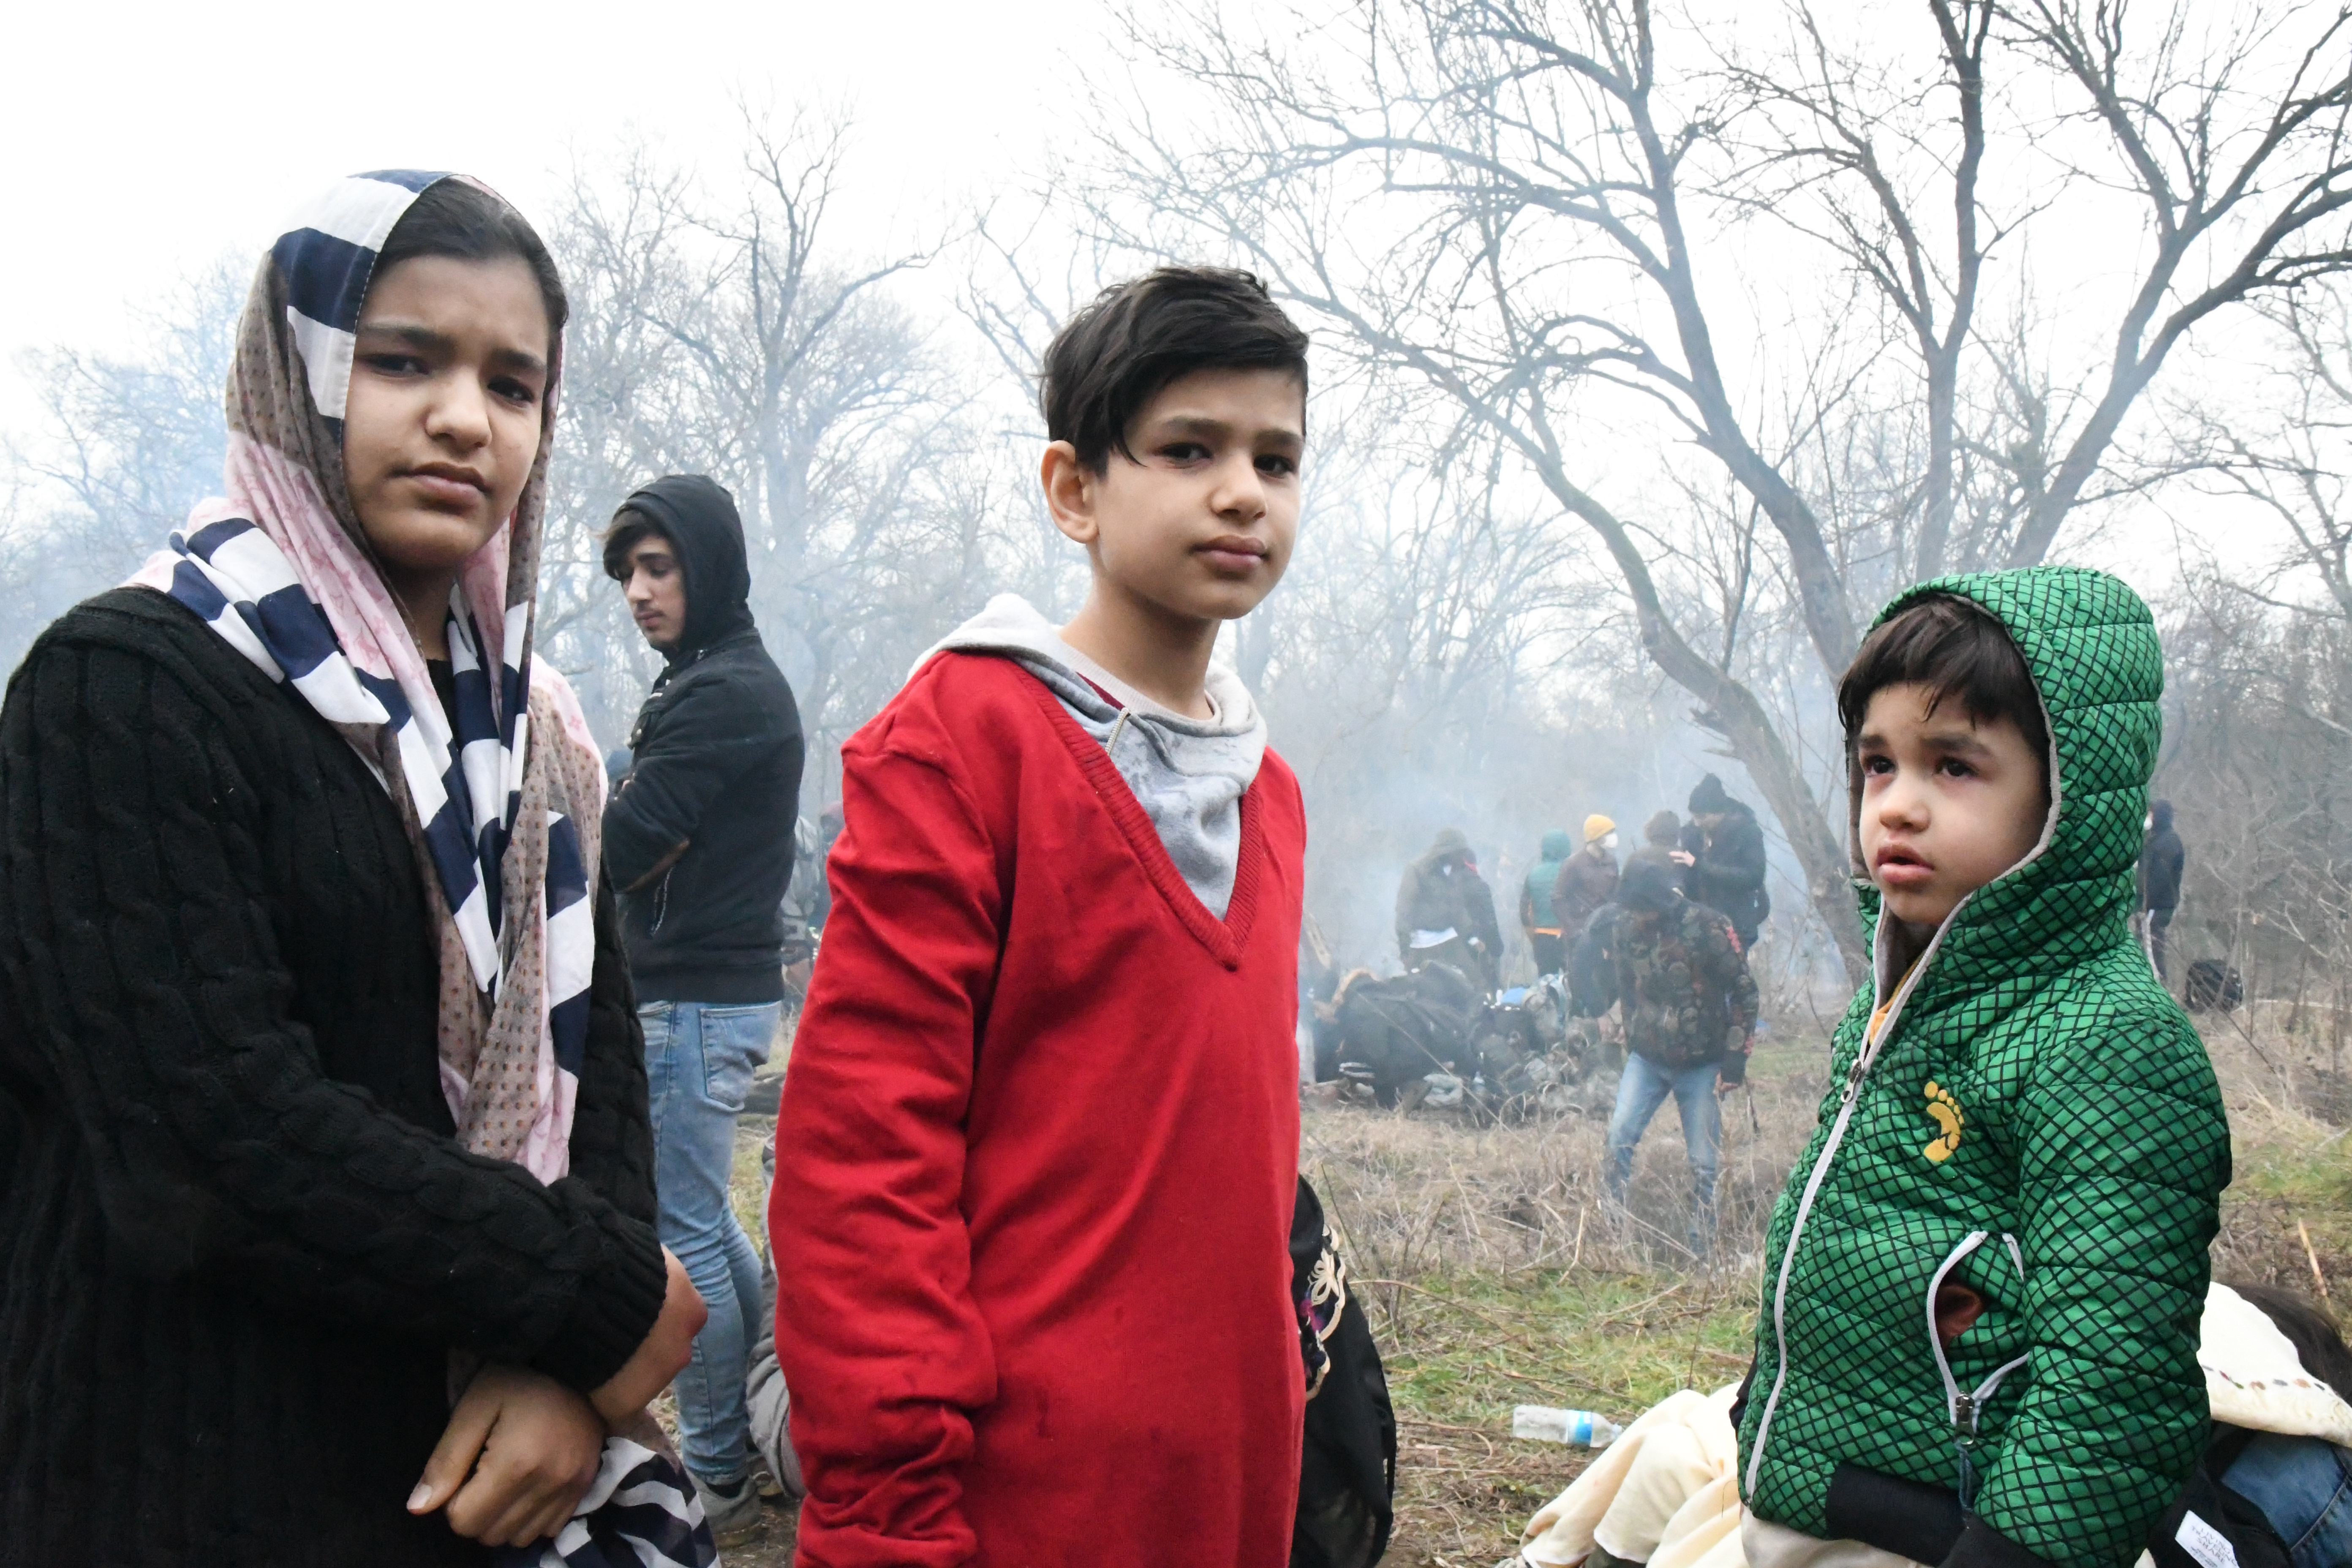 A német belügyminiszter befogadná a gyerekeket a görög menekülttáborokból